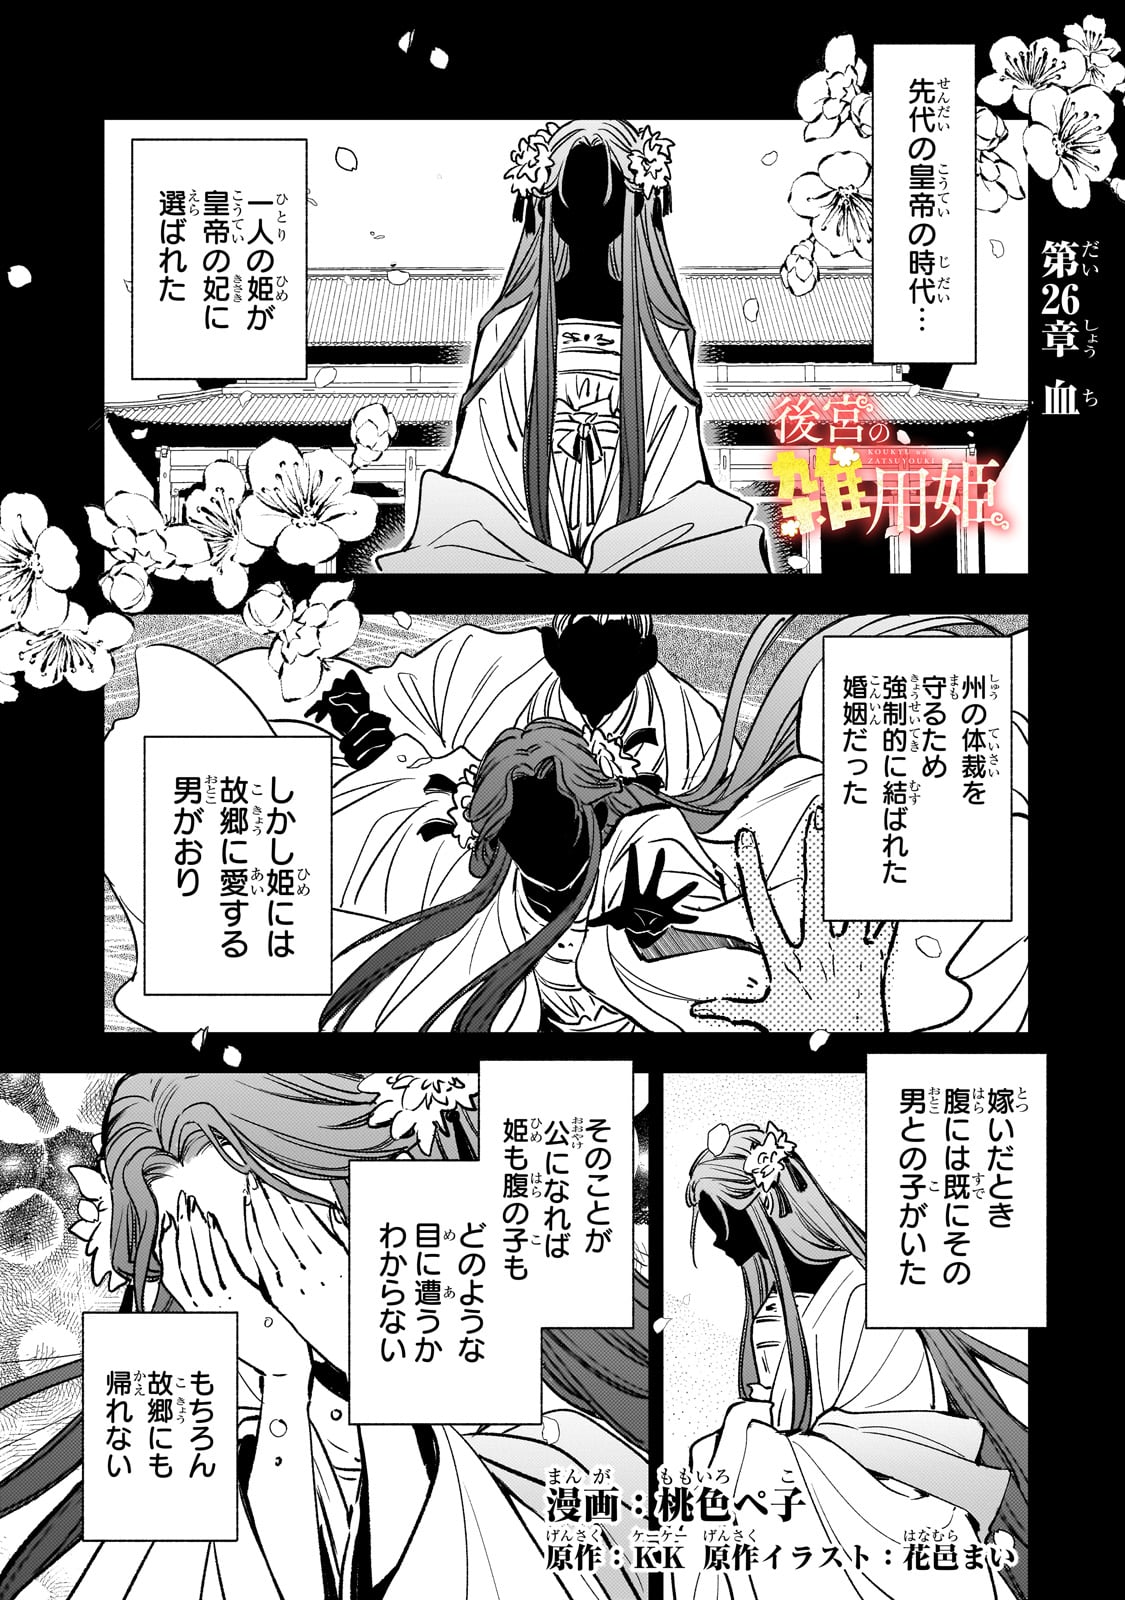 Koukyu no Zatsuyouki - Chapter 26 - Page 1